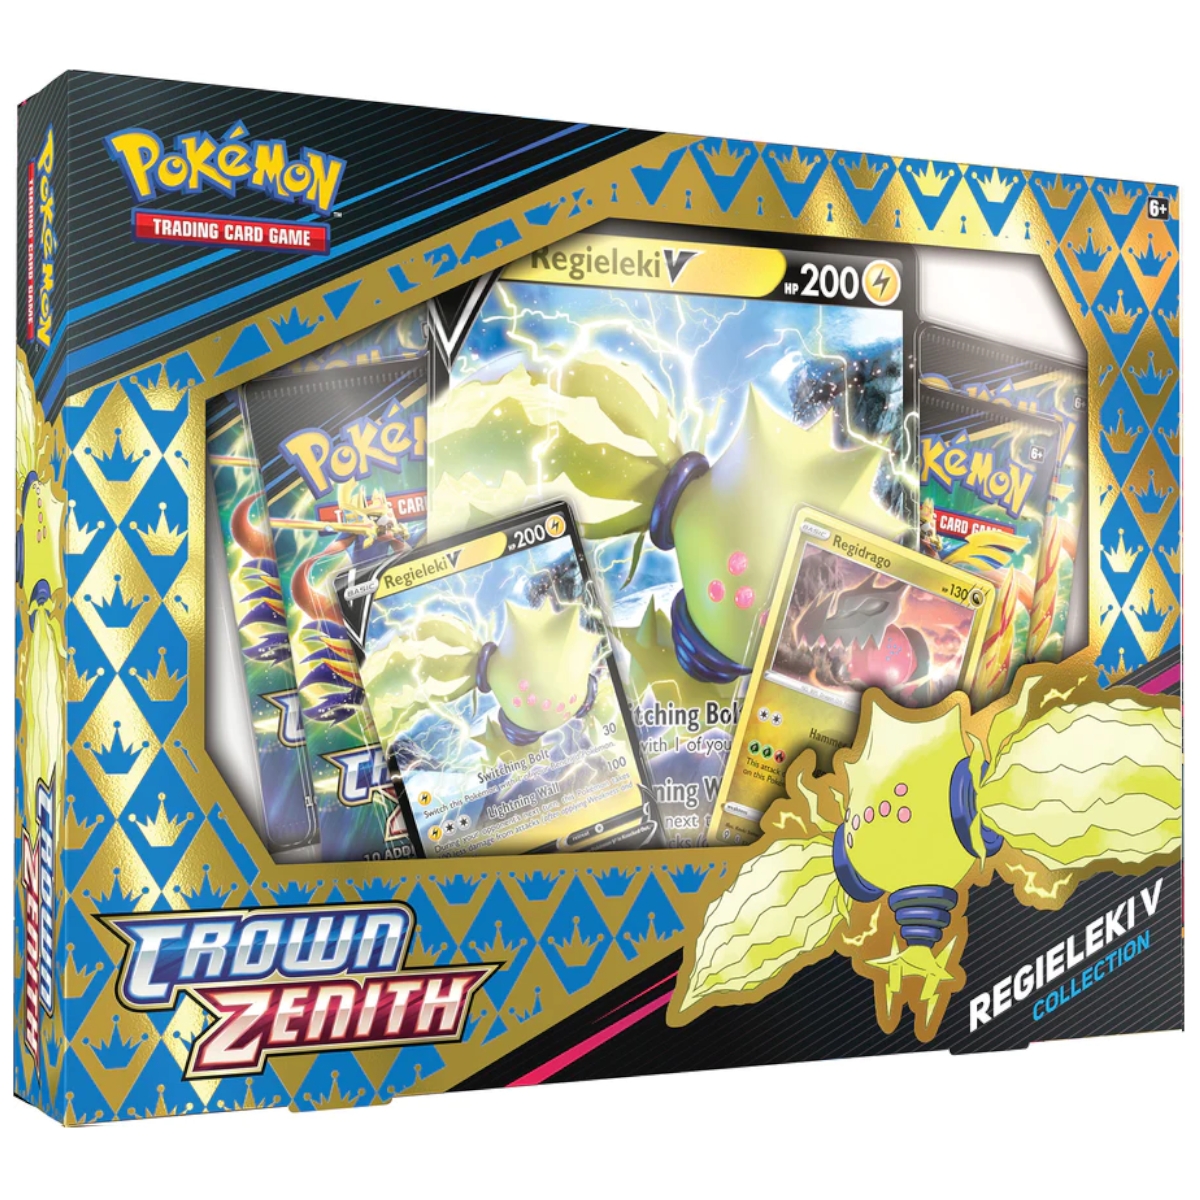 Pokémon - Crown Zenith V Box